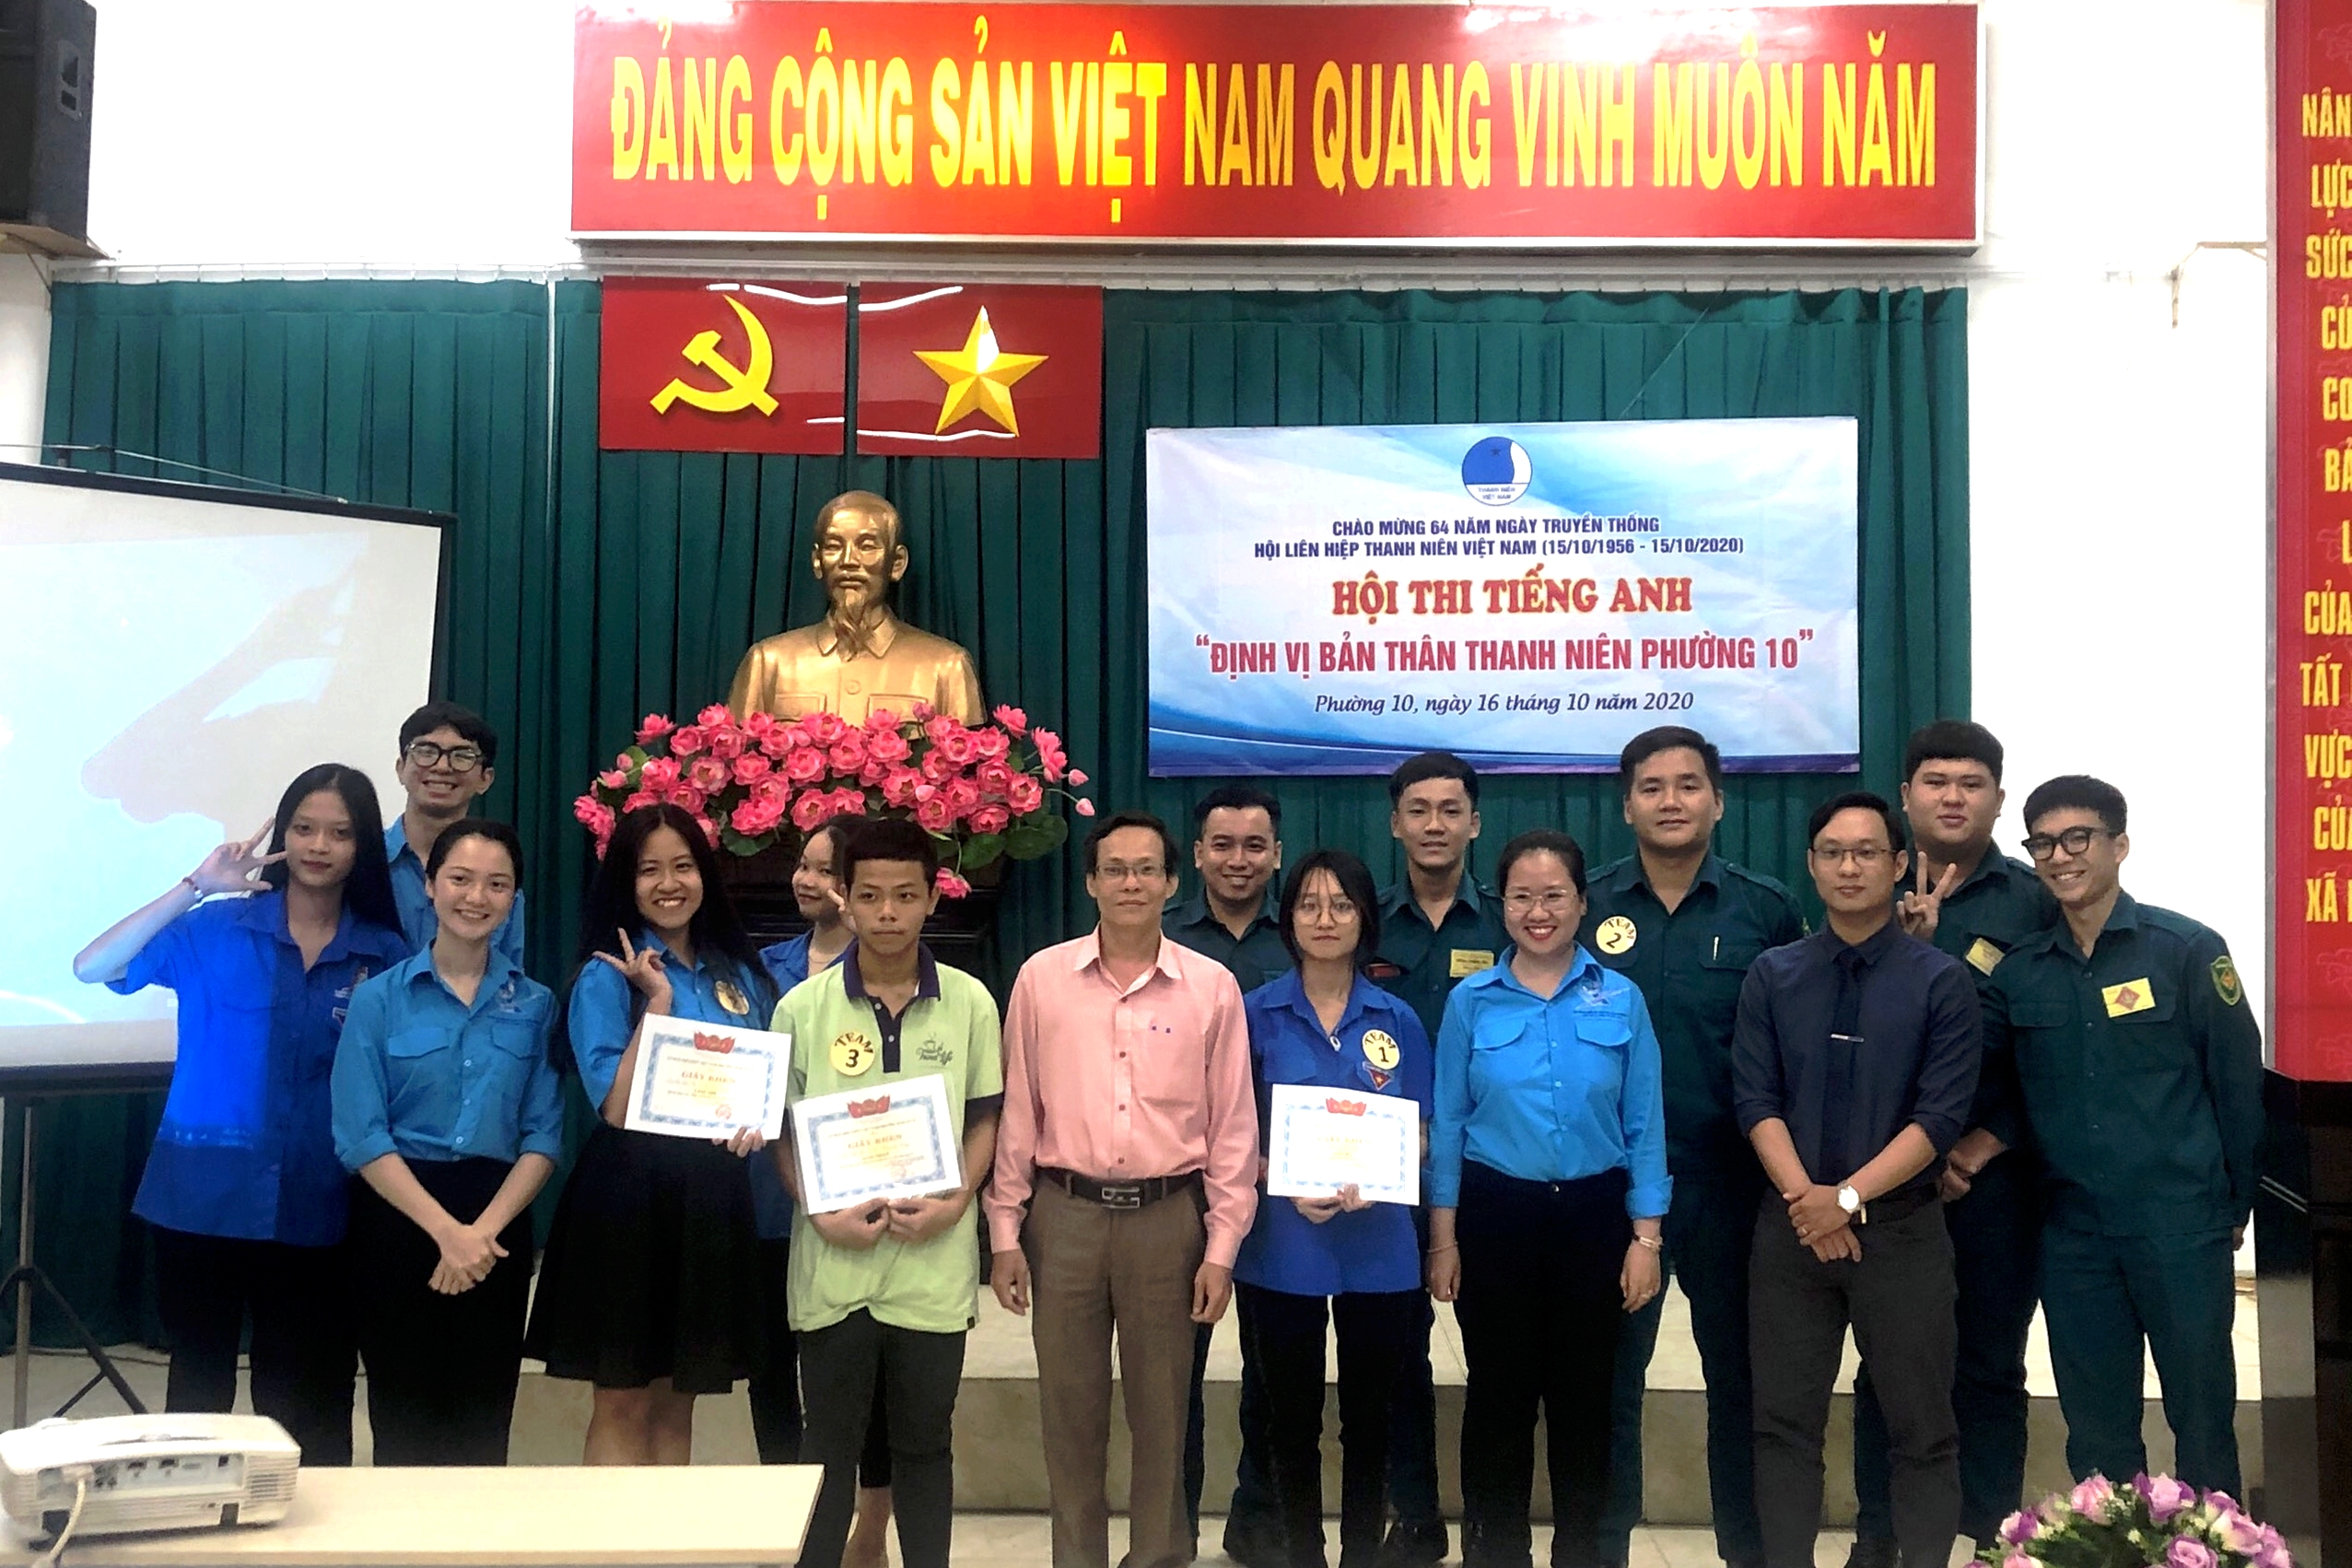 Image: Hội Liên hiệp thanh niên Phường 10 tổ chức họp mặt kỷ niệm 64 năm truyền thống Hội liên hiệp thanh niên  Việt Nam (15/10/1956 - 15/10/2020)